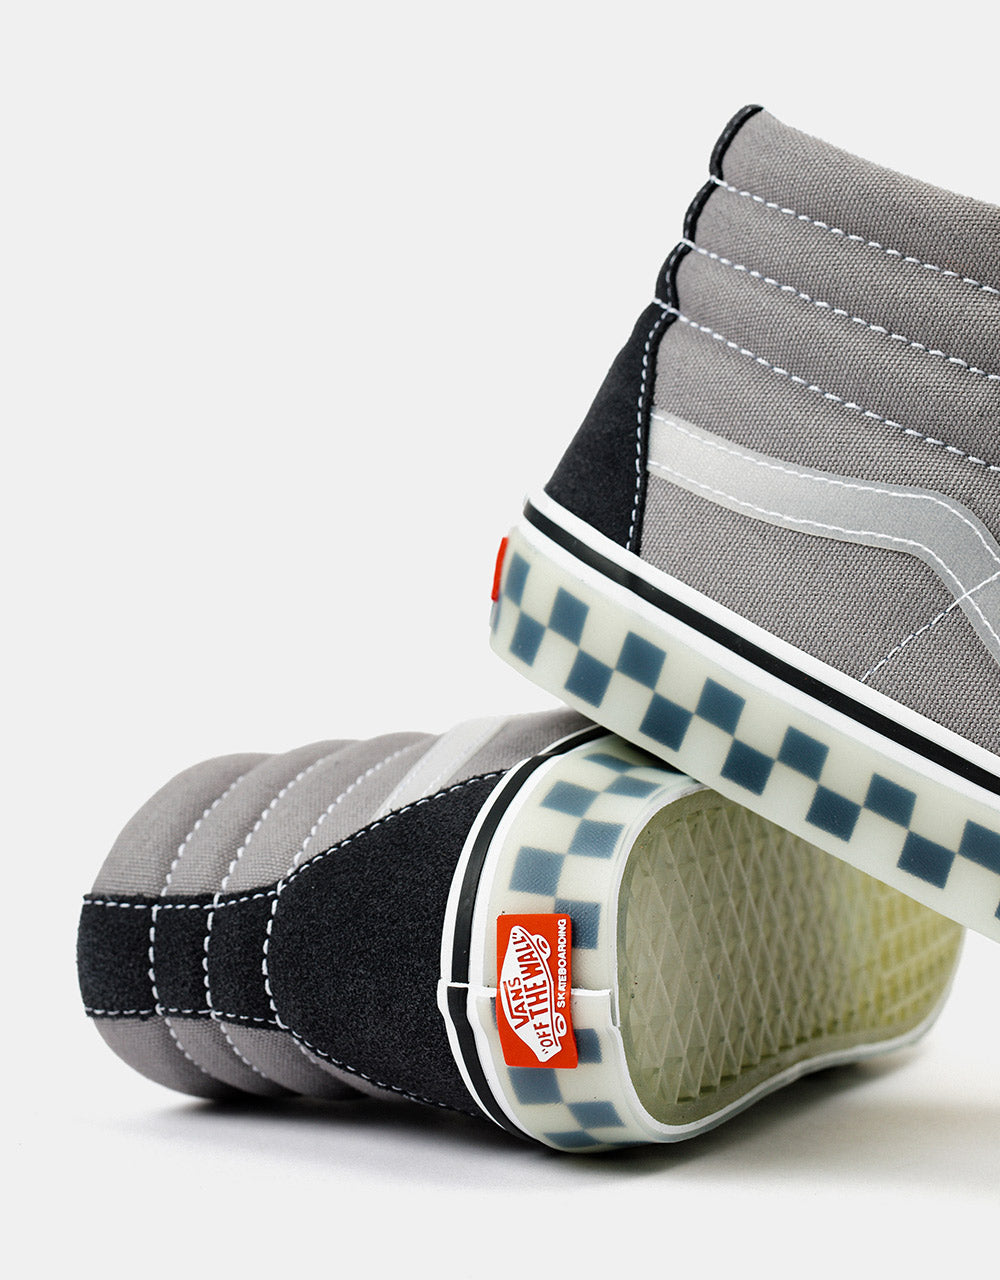 Vans Skate SK8-Hi Shoes - (Translucent Rubber) Grey